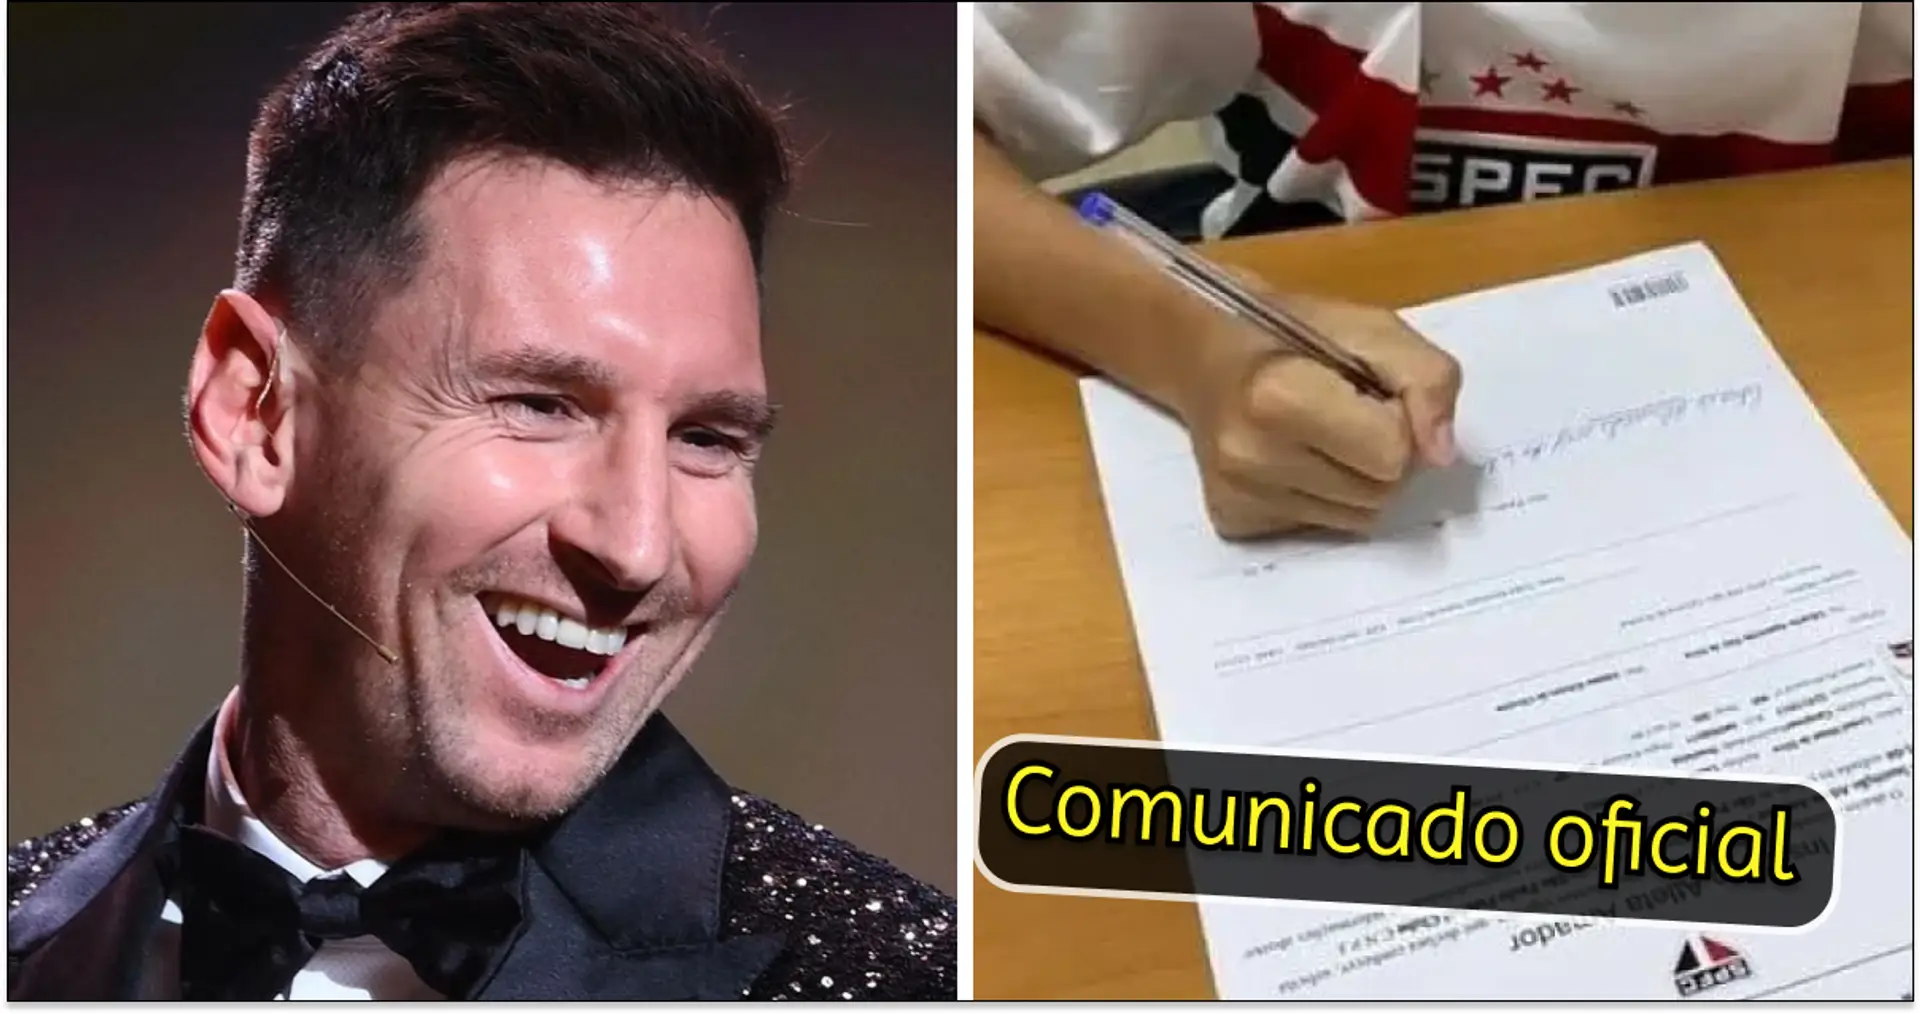 OFFIZIELL: Lionel Messi unterschreibt Vertrag bei Sao Paulo - er ist ein 9-jähriger Brasilianer